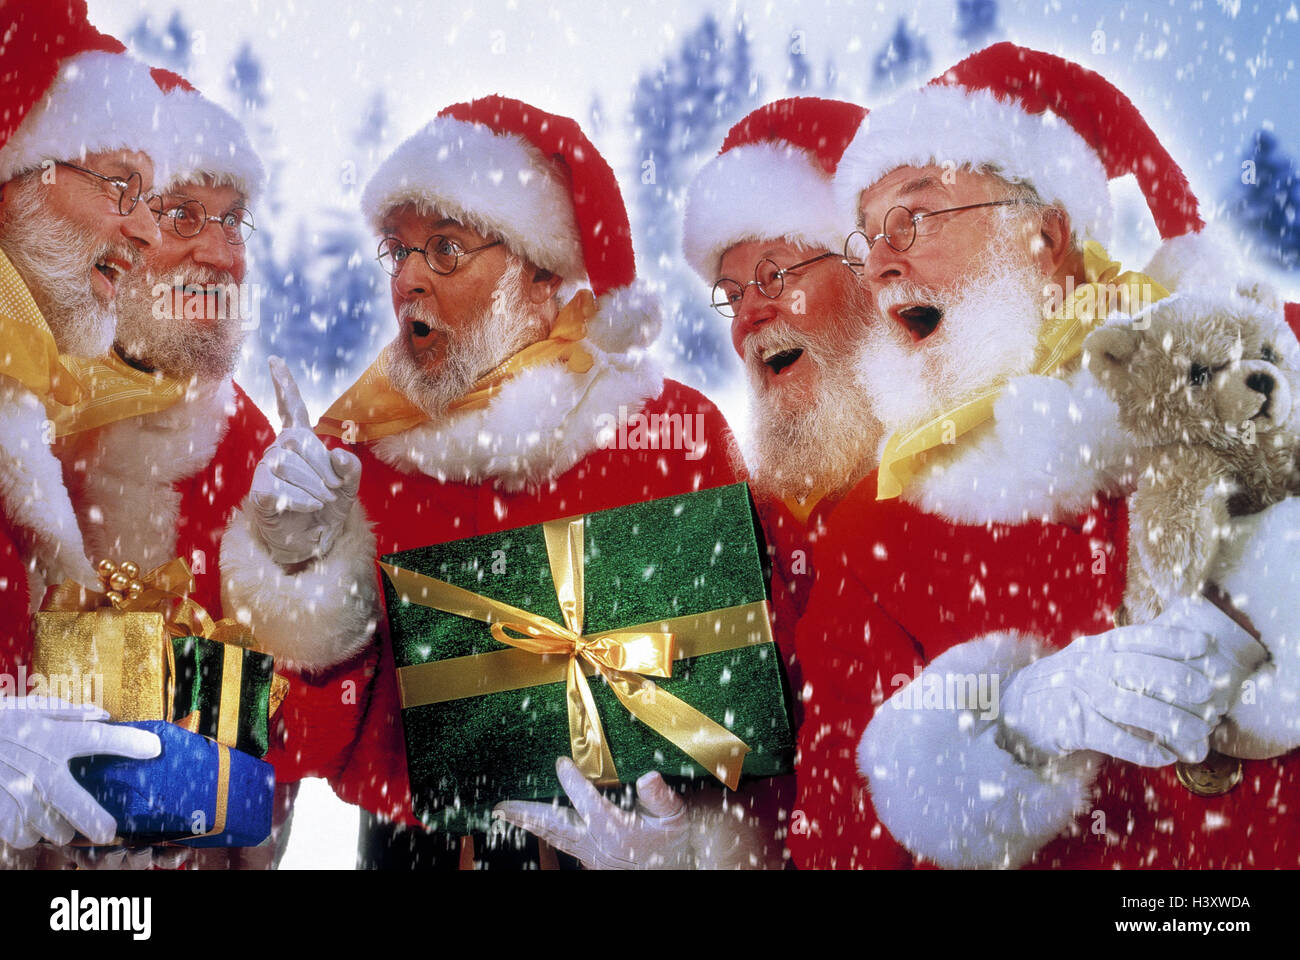 Weihnachtsmänner, Geschenke, Unterhaltung, glücklich, überrascht Composing, Studio, Weihnachten, Weihnachtsmann, Santa, Gruppe 5, Weihnachten, Erzählung, Array, Tipp, Mimik, Erstaunen, staunen, Überraschung, Schneefall, Weihnachtsgeschenke, Überraschungen, Teddybär Stockfoto